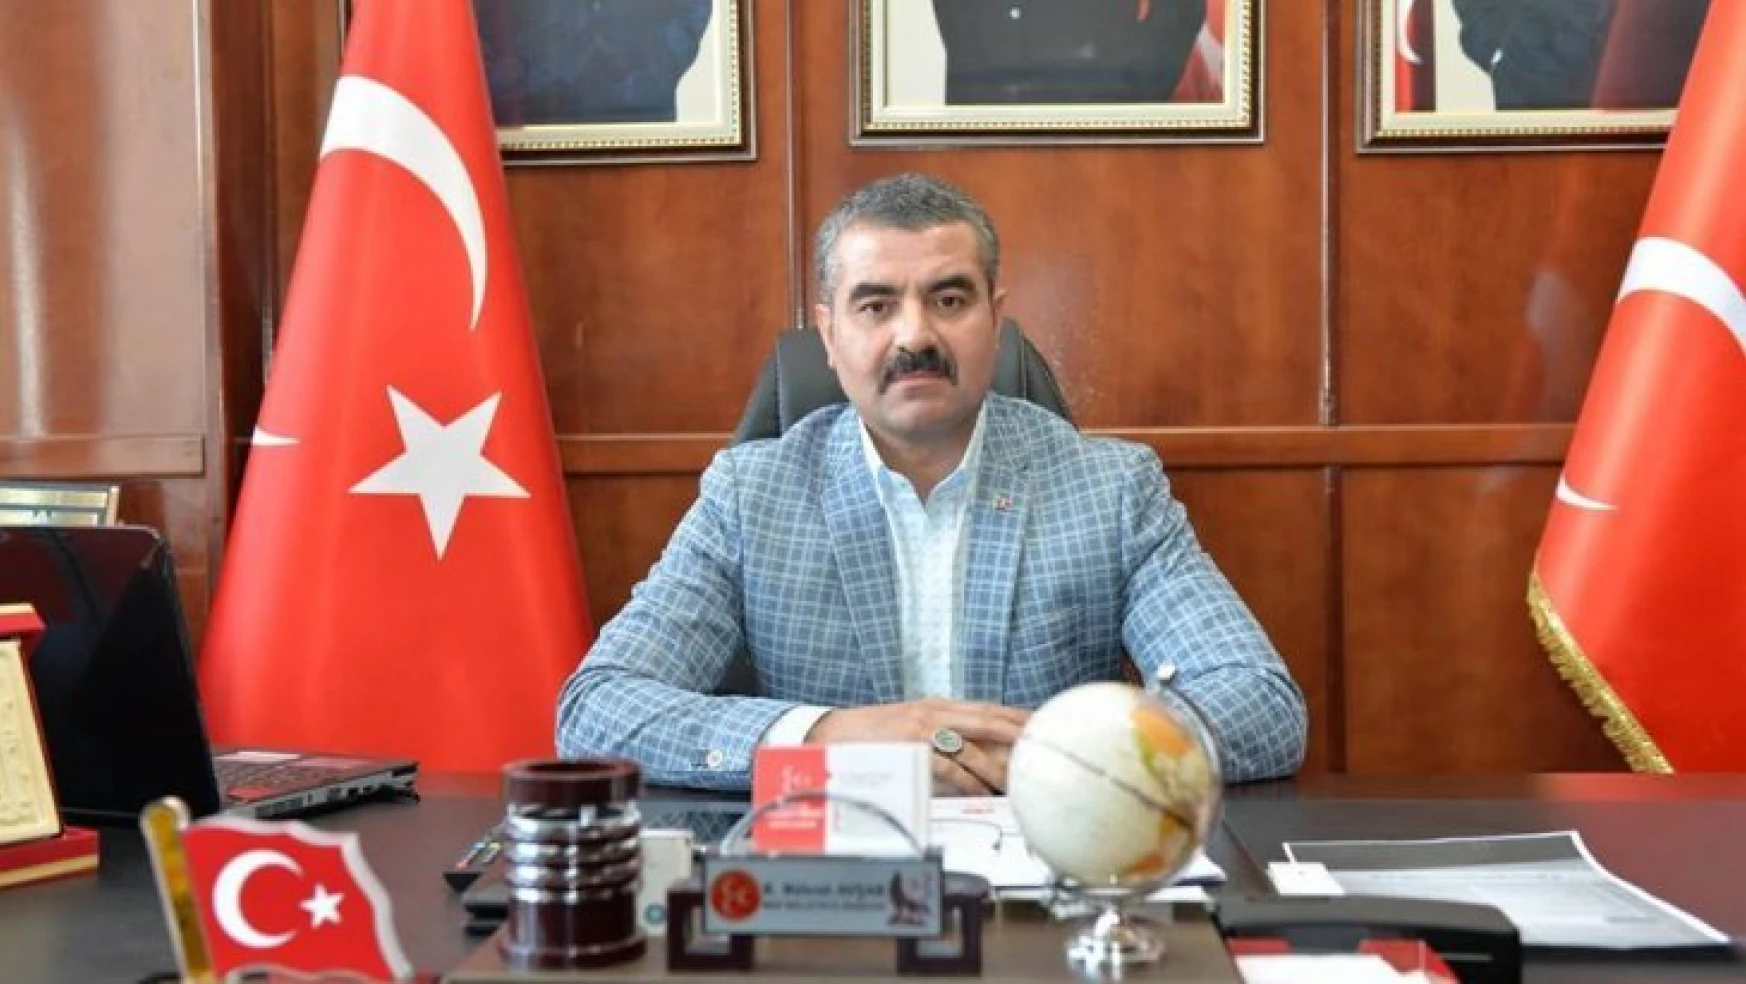 Başkan Avşar'dan Şehidimize Taziye Mesajı